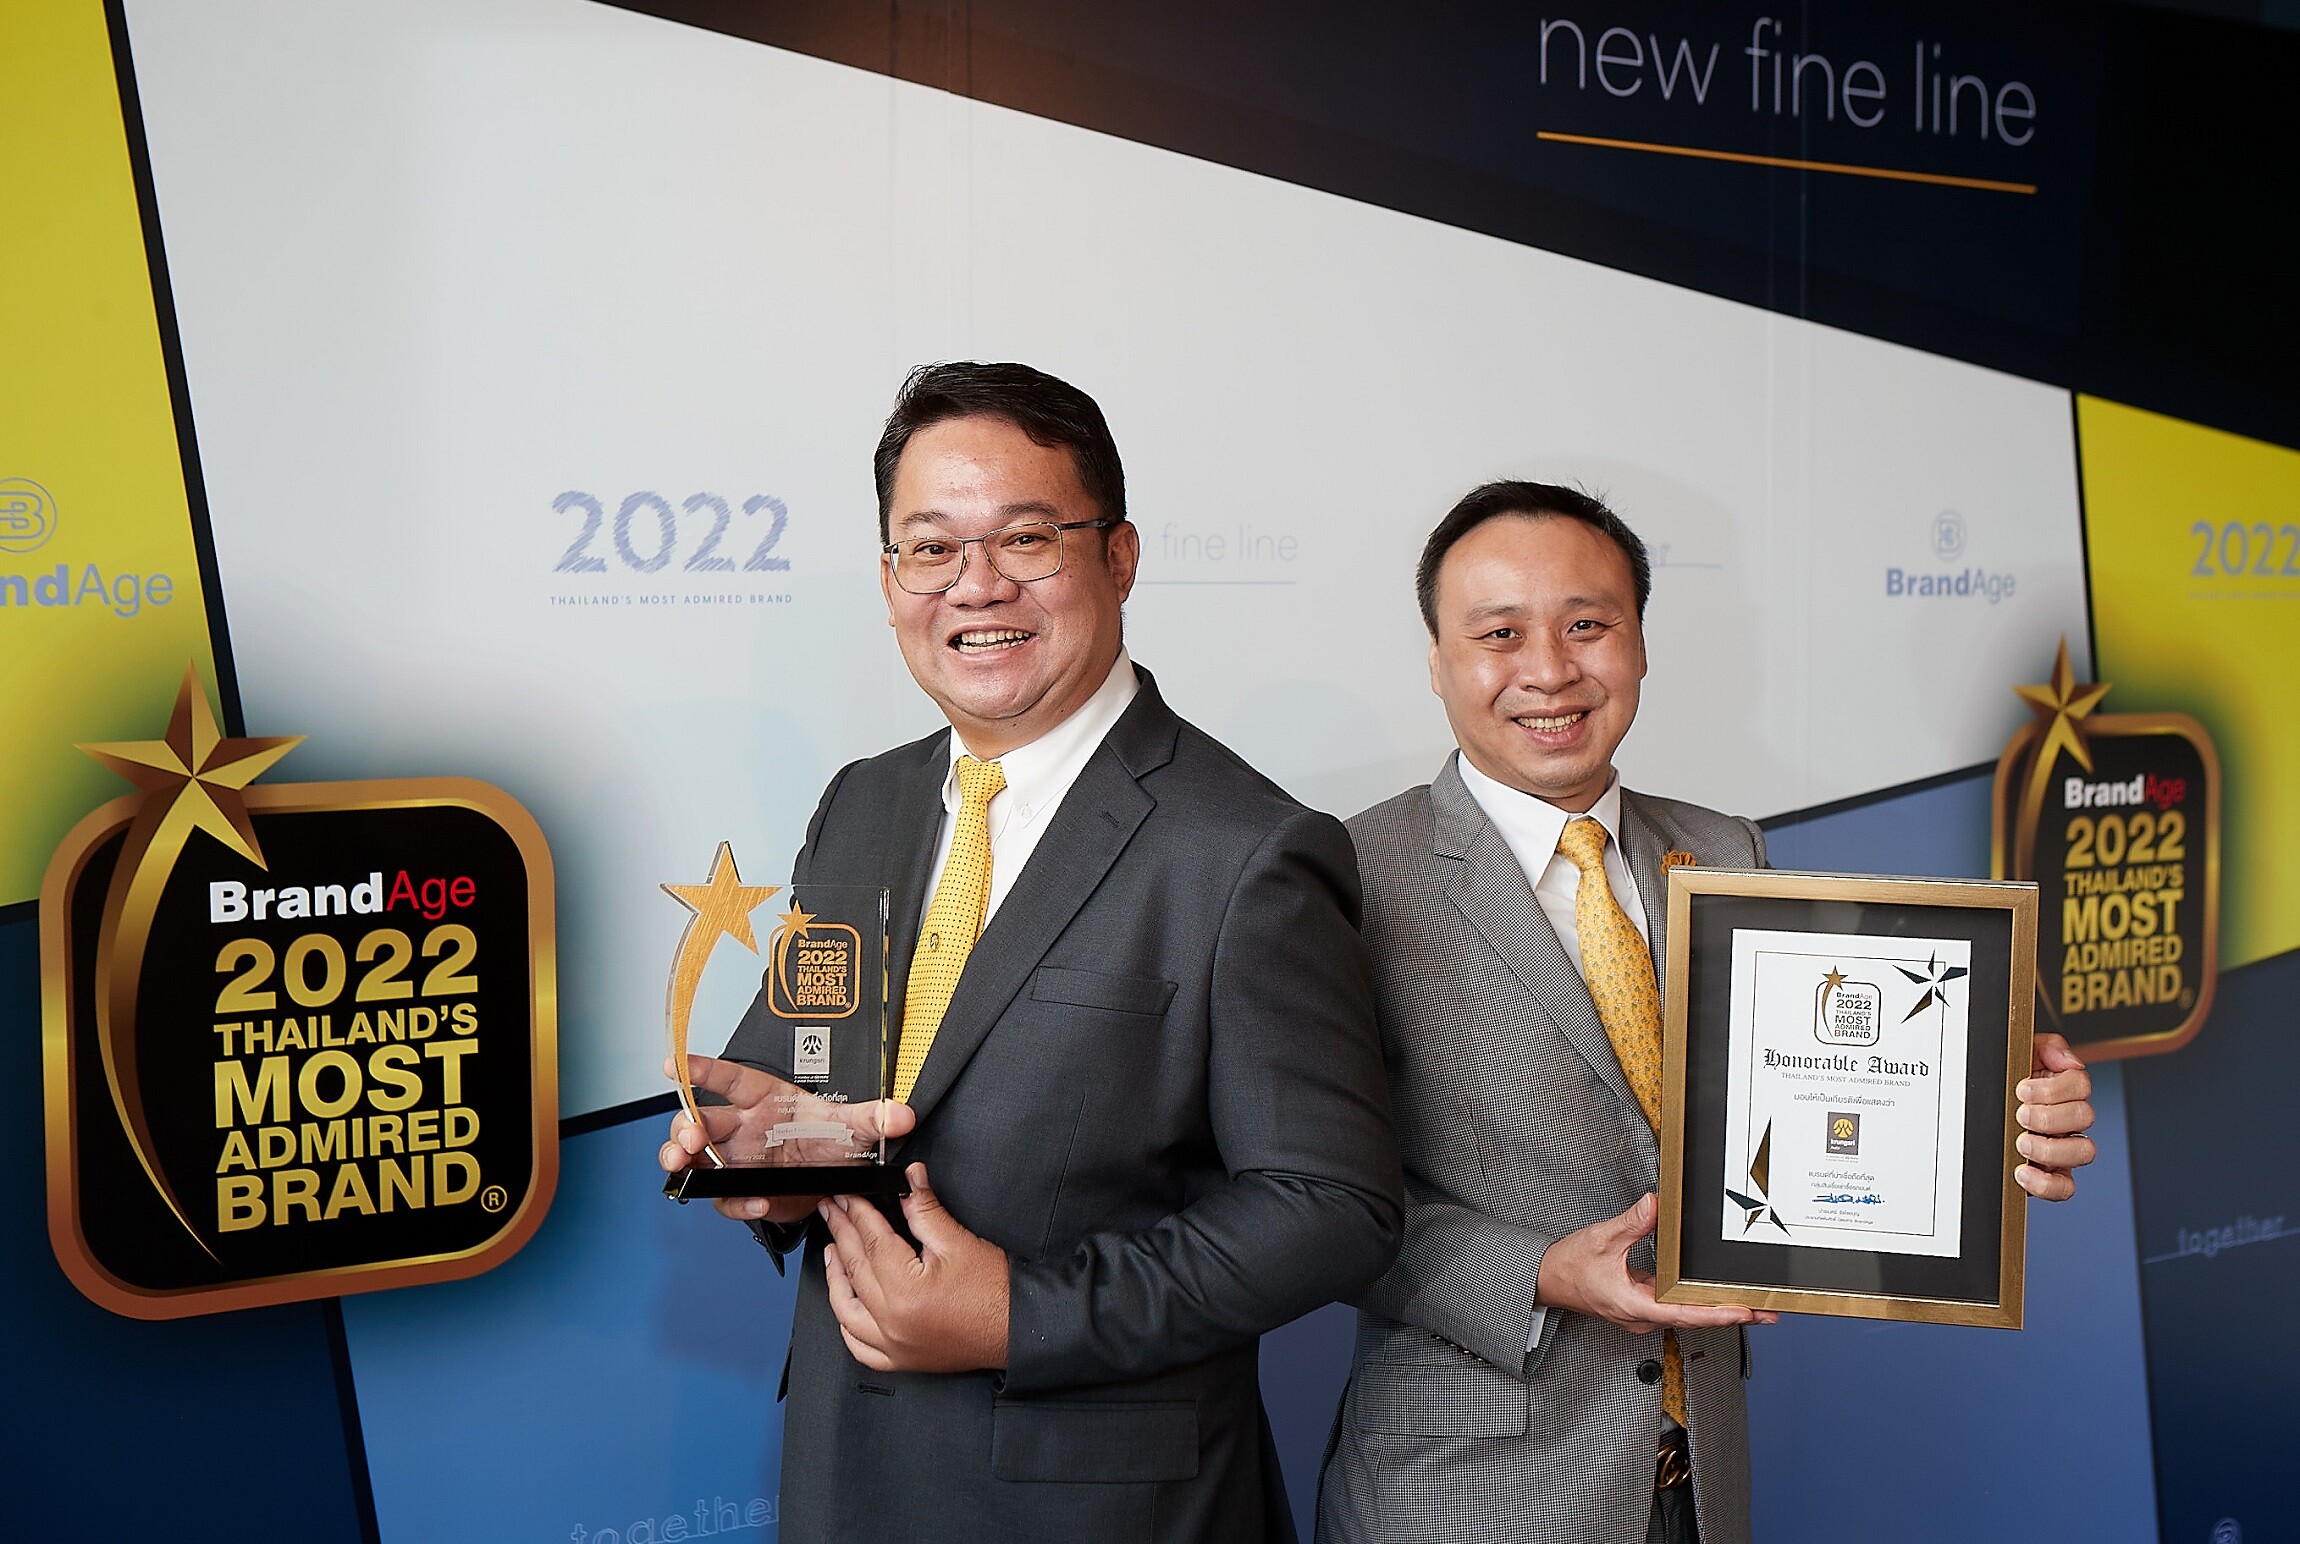 "กรุงศรี ออโต้" คว้า 2 รางวัลจาก Thailand's Most Admired Brand 2022  ตอกย้ำแบรนด์ผู้นำตลาดที่ครองใจลูกค้าสินเชื่อยานยนต์ในประเทศไทย